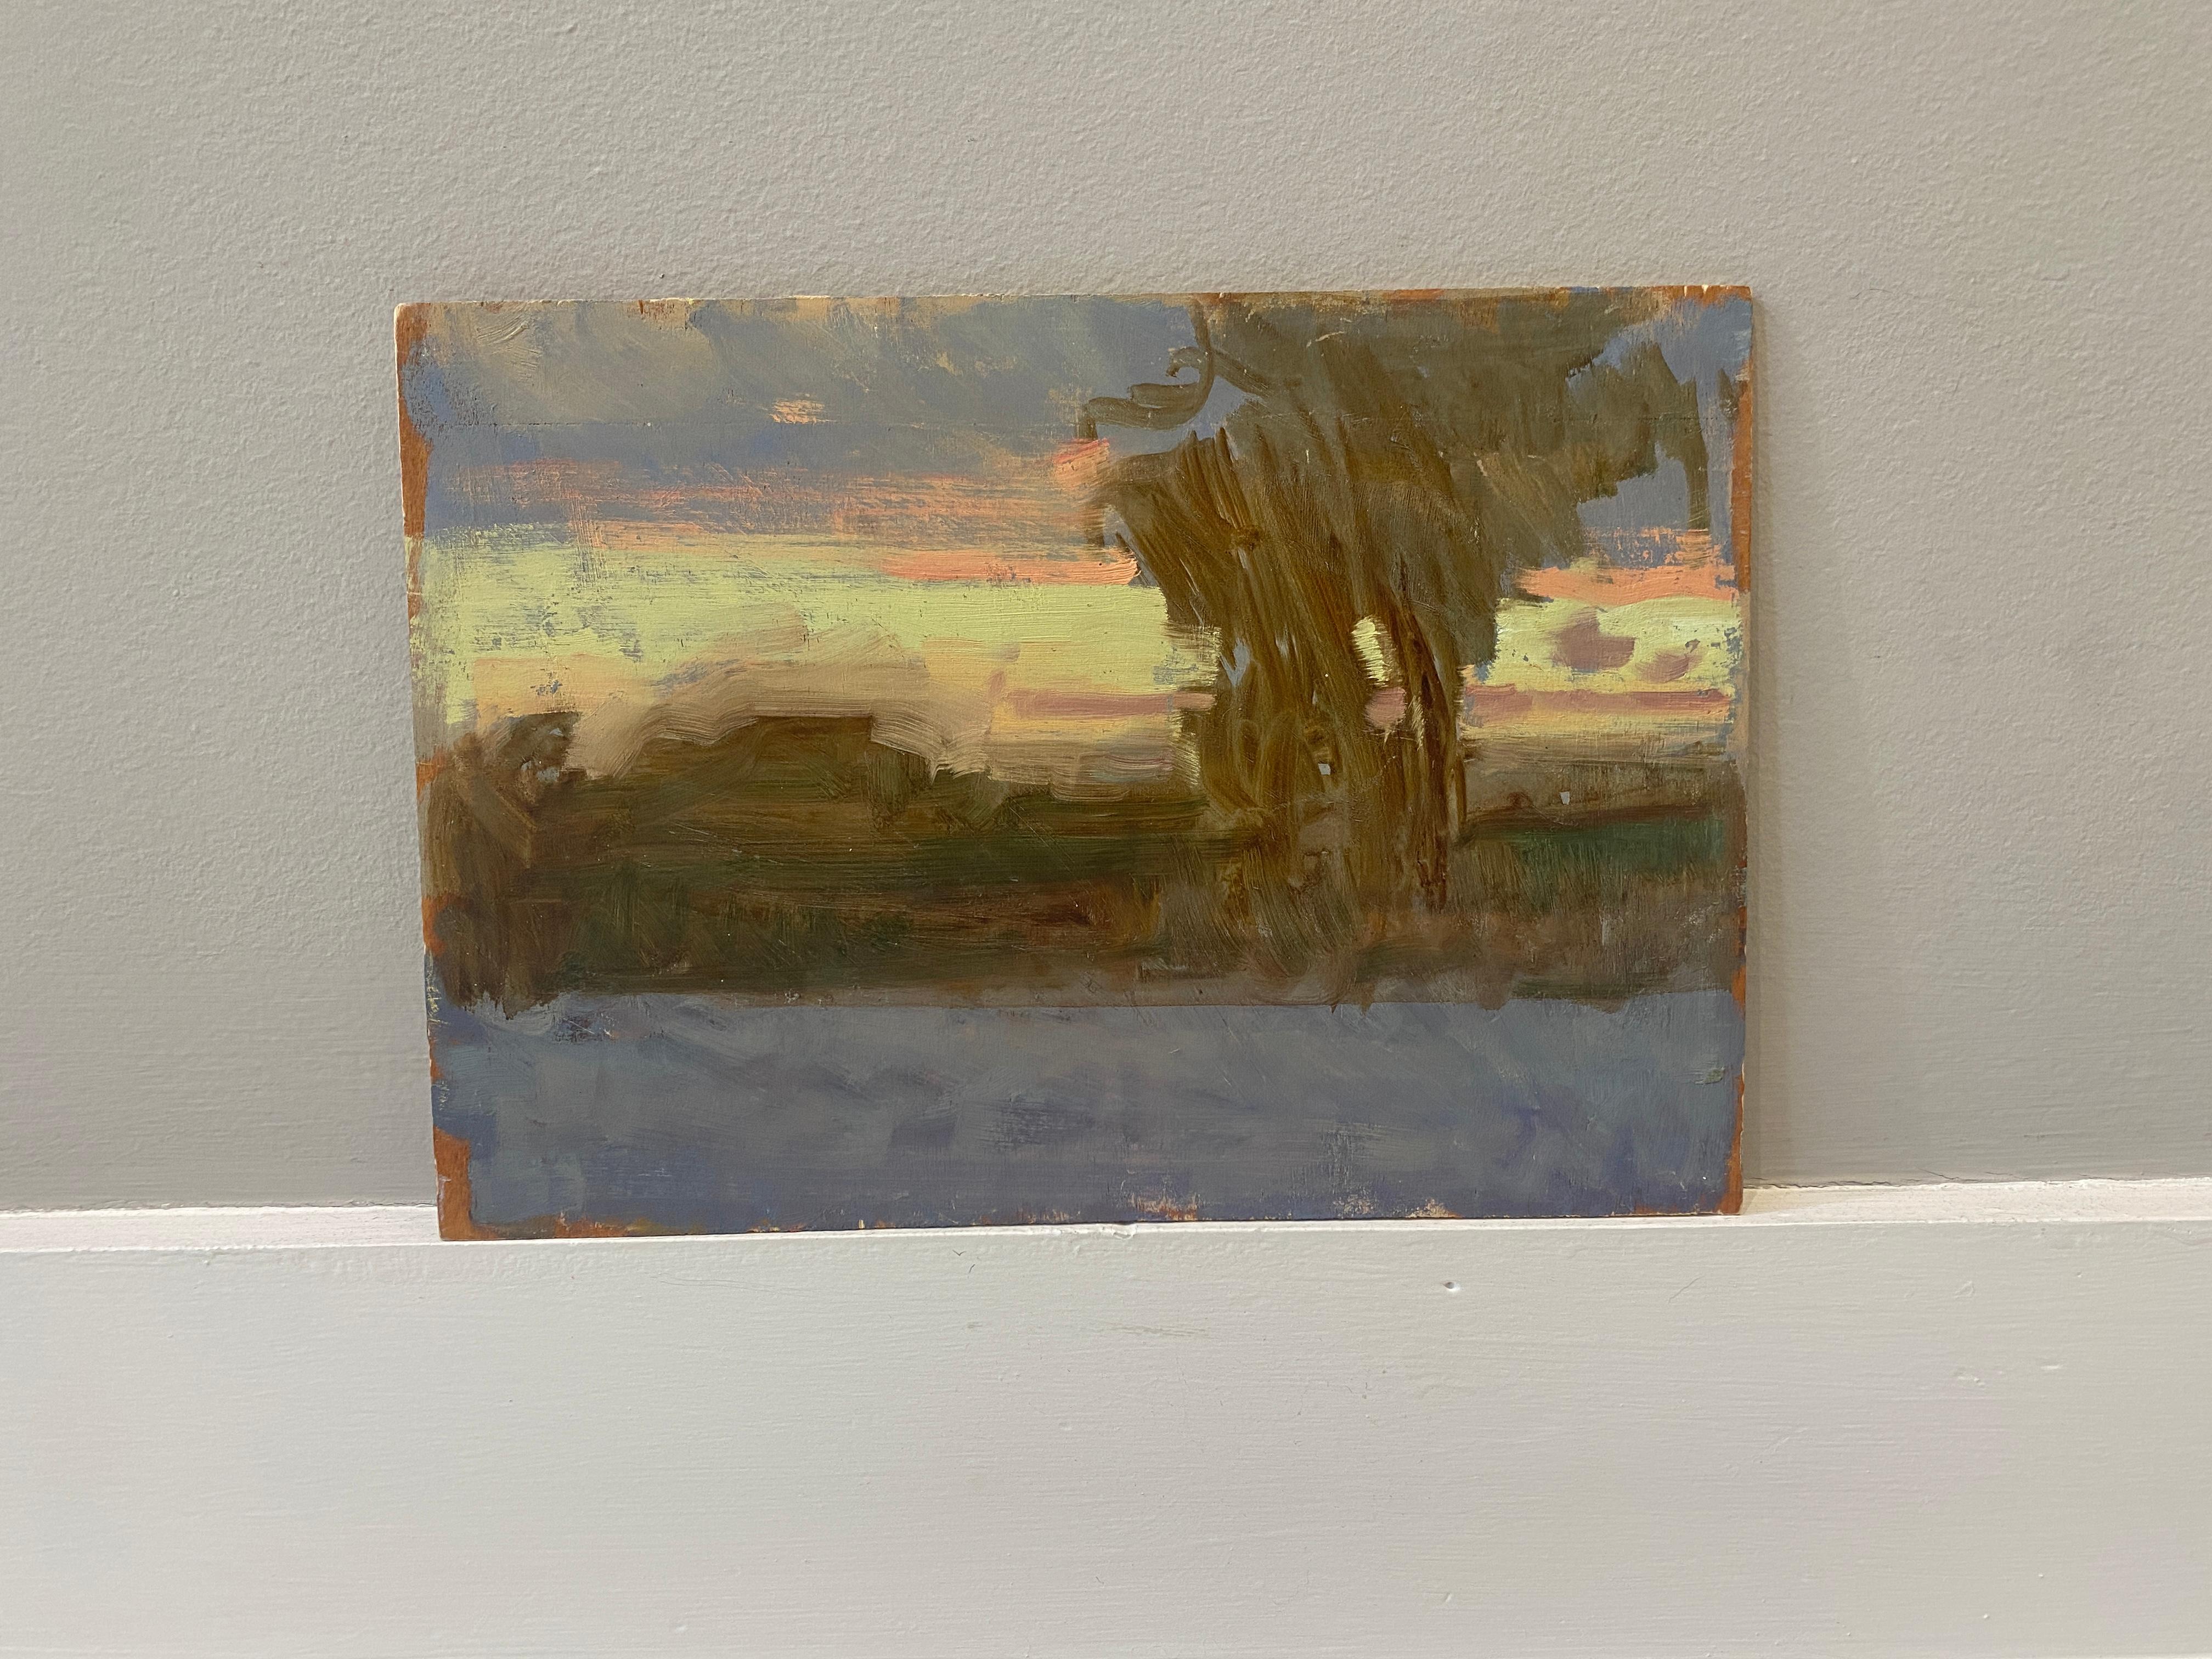 Sonntag Sonnenaufgang – Painting von Ben Fenske